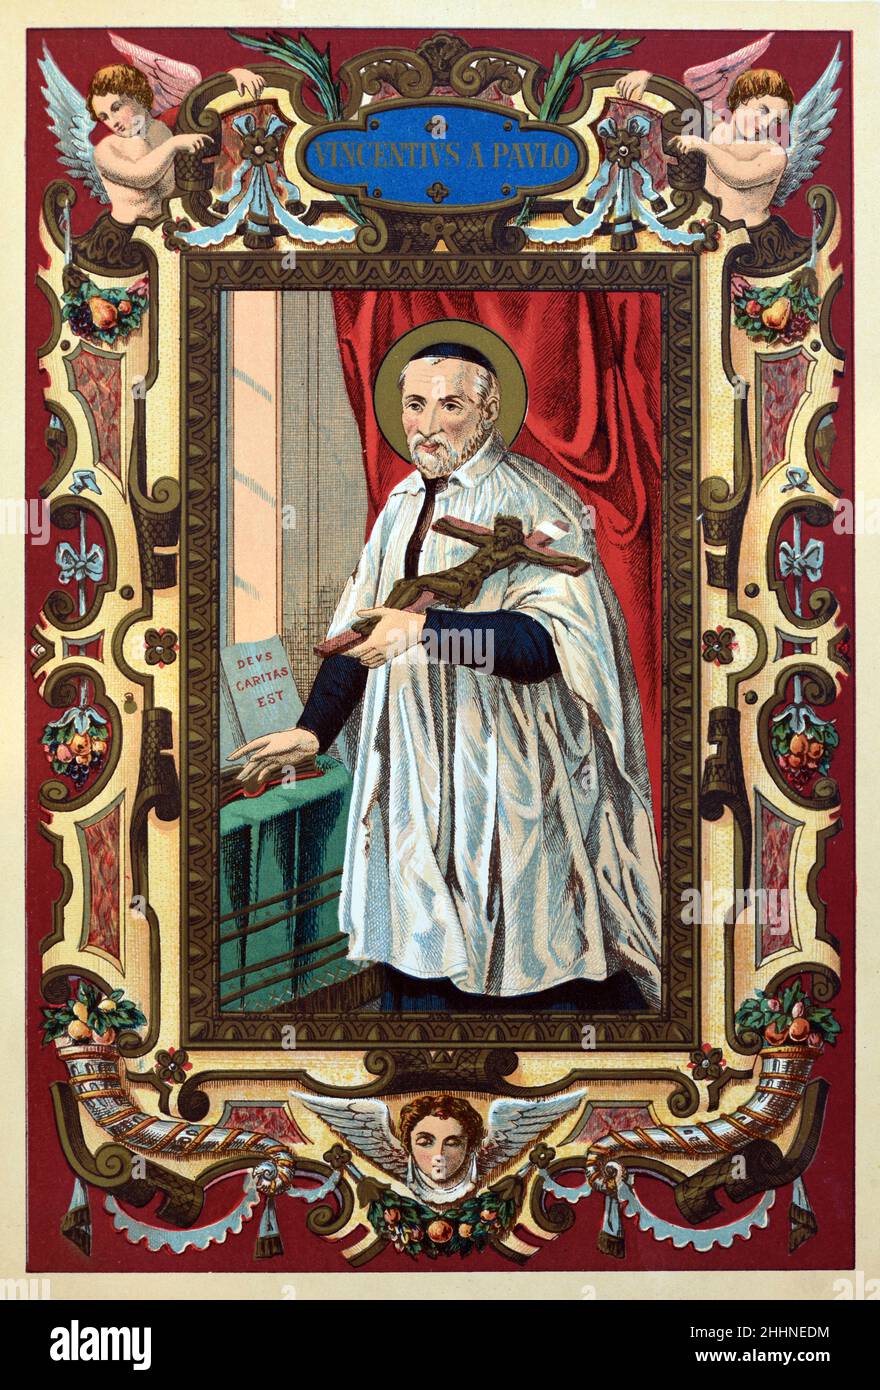 Saint Vincent de Paul (1581-1660) prêtre catholique français.Chromolithographe de l'édition 1887 de la vie des saints de Butler. Banque D'Images